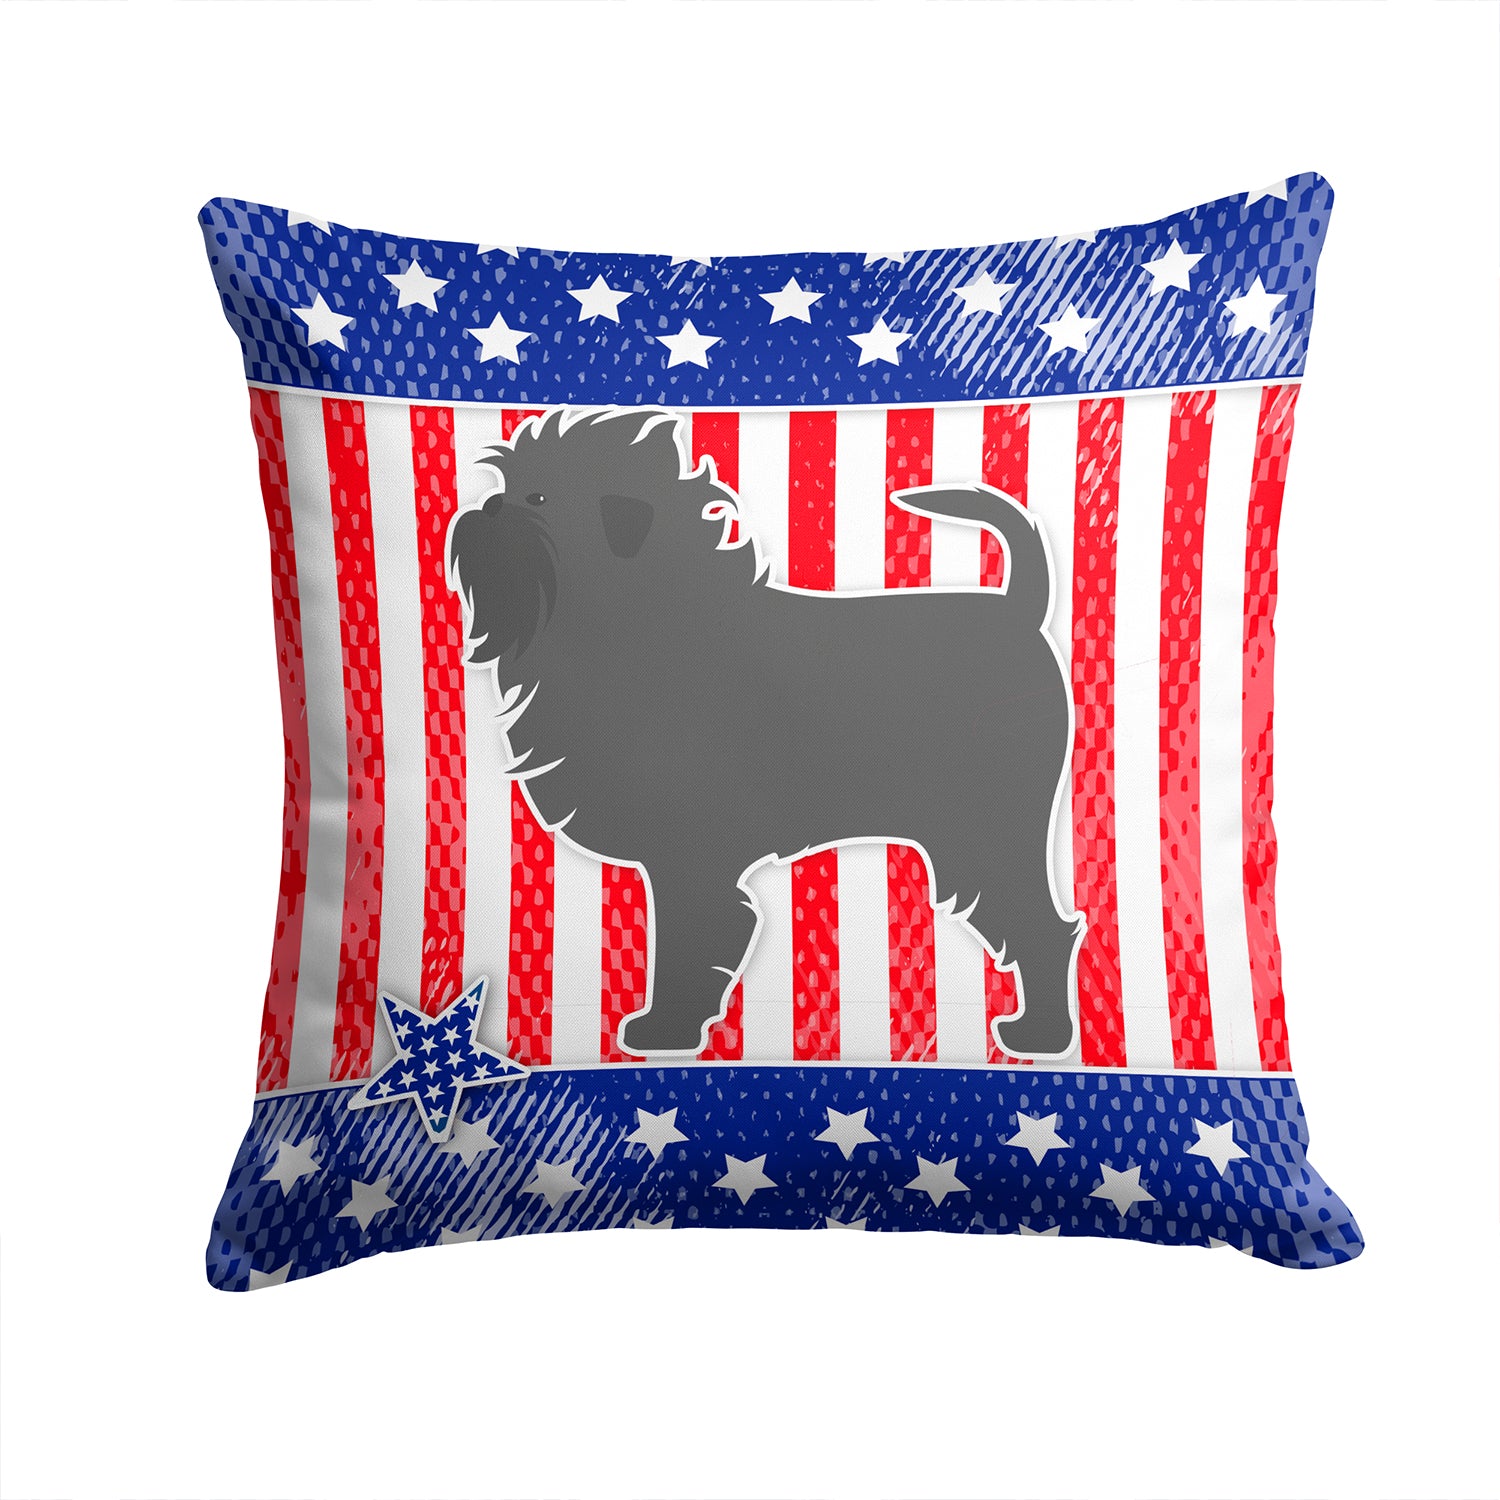 USA Patriotic Affenpinscher Fabric Decorative Pillow BB3348PW1414 - the-store.com